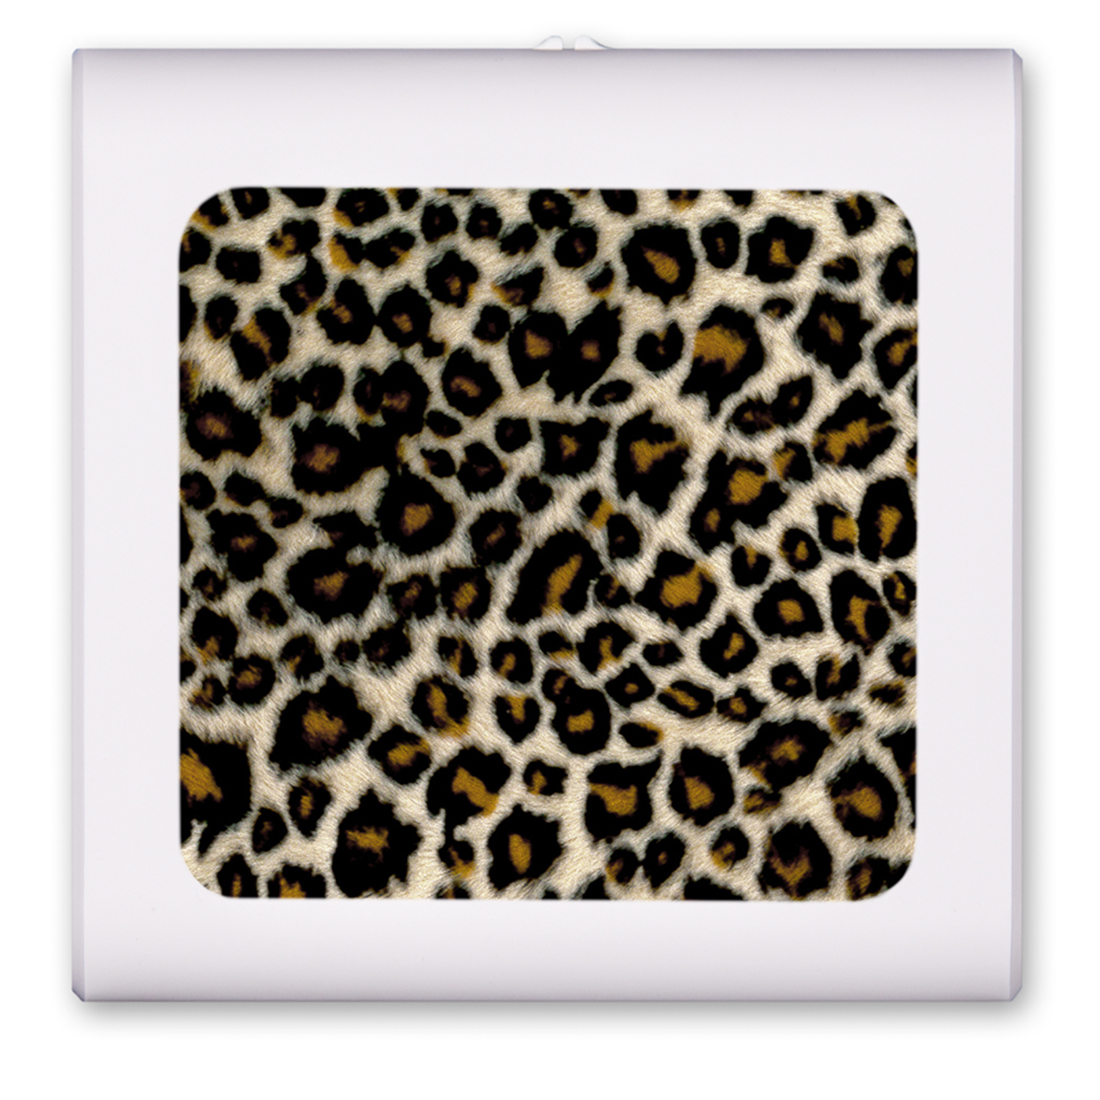 Small Leopard Spots - #873